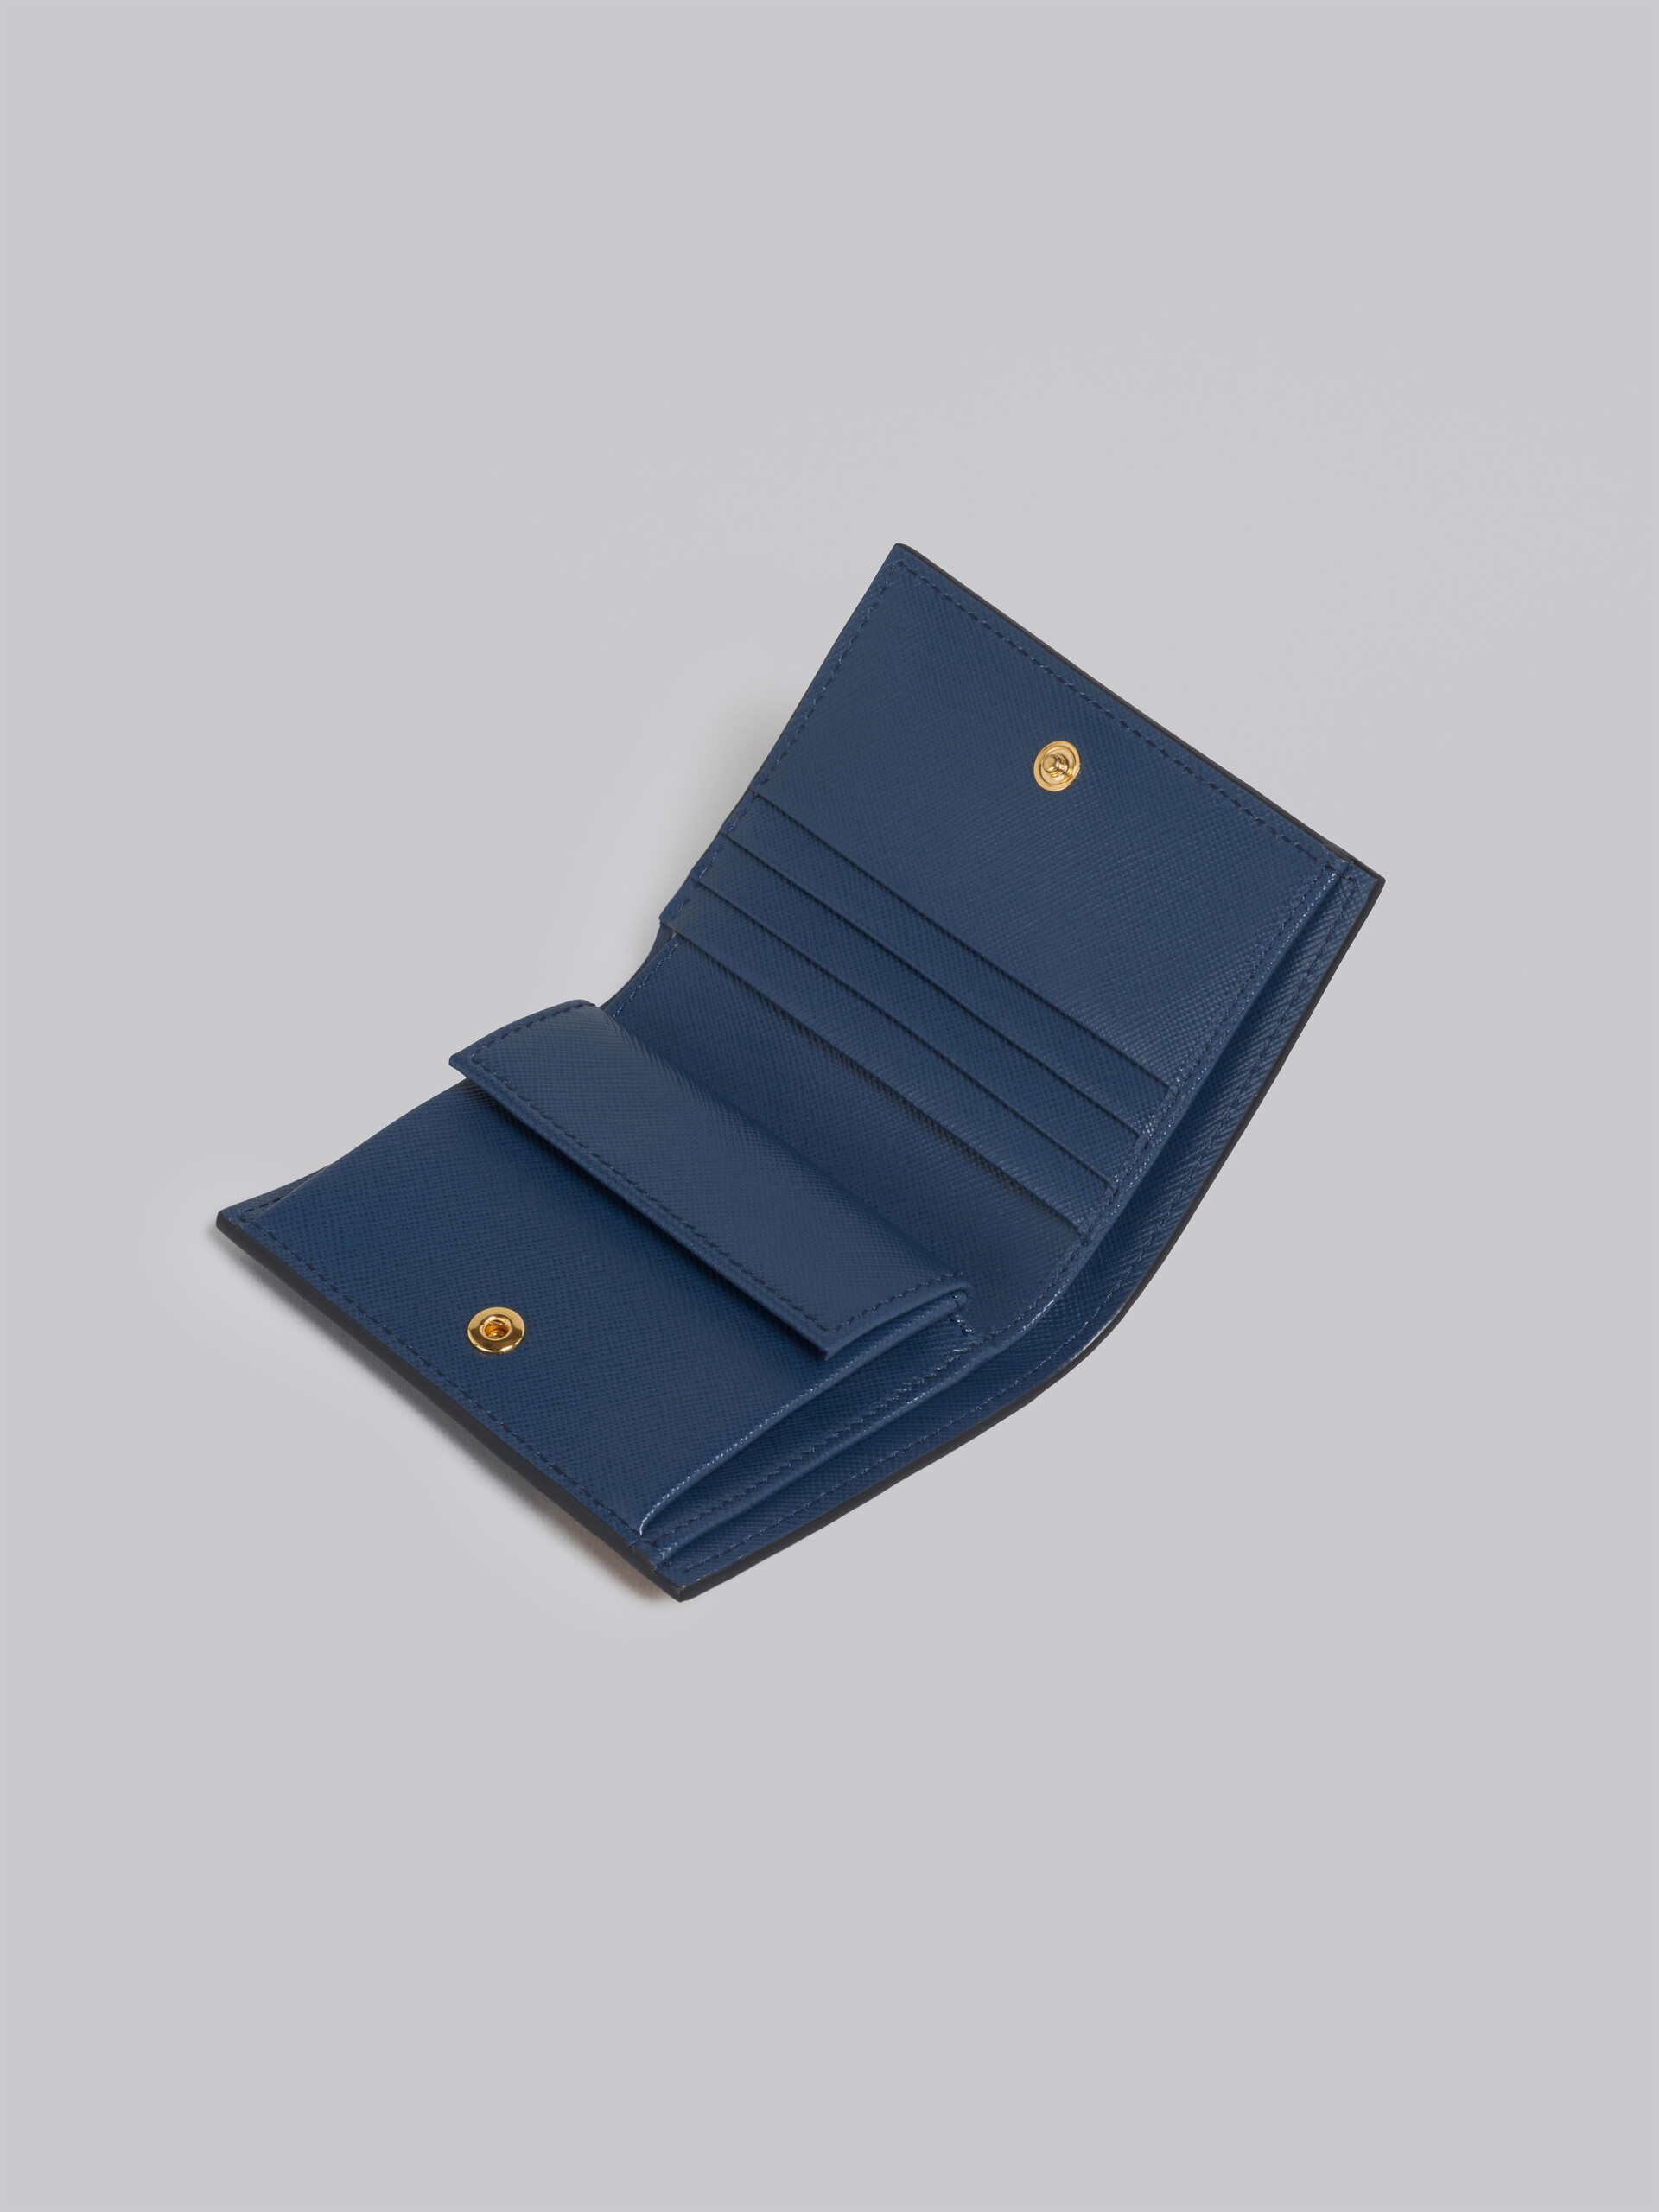 Portafoglio bi-fold in saffiano arancio rosa e blu - Portafogli - Image 4